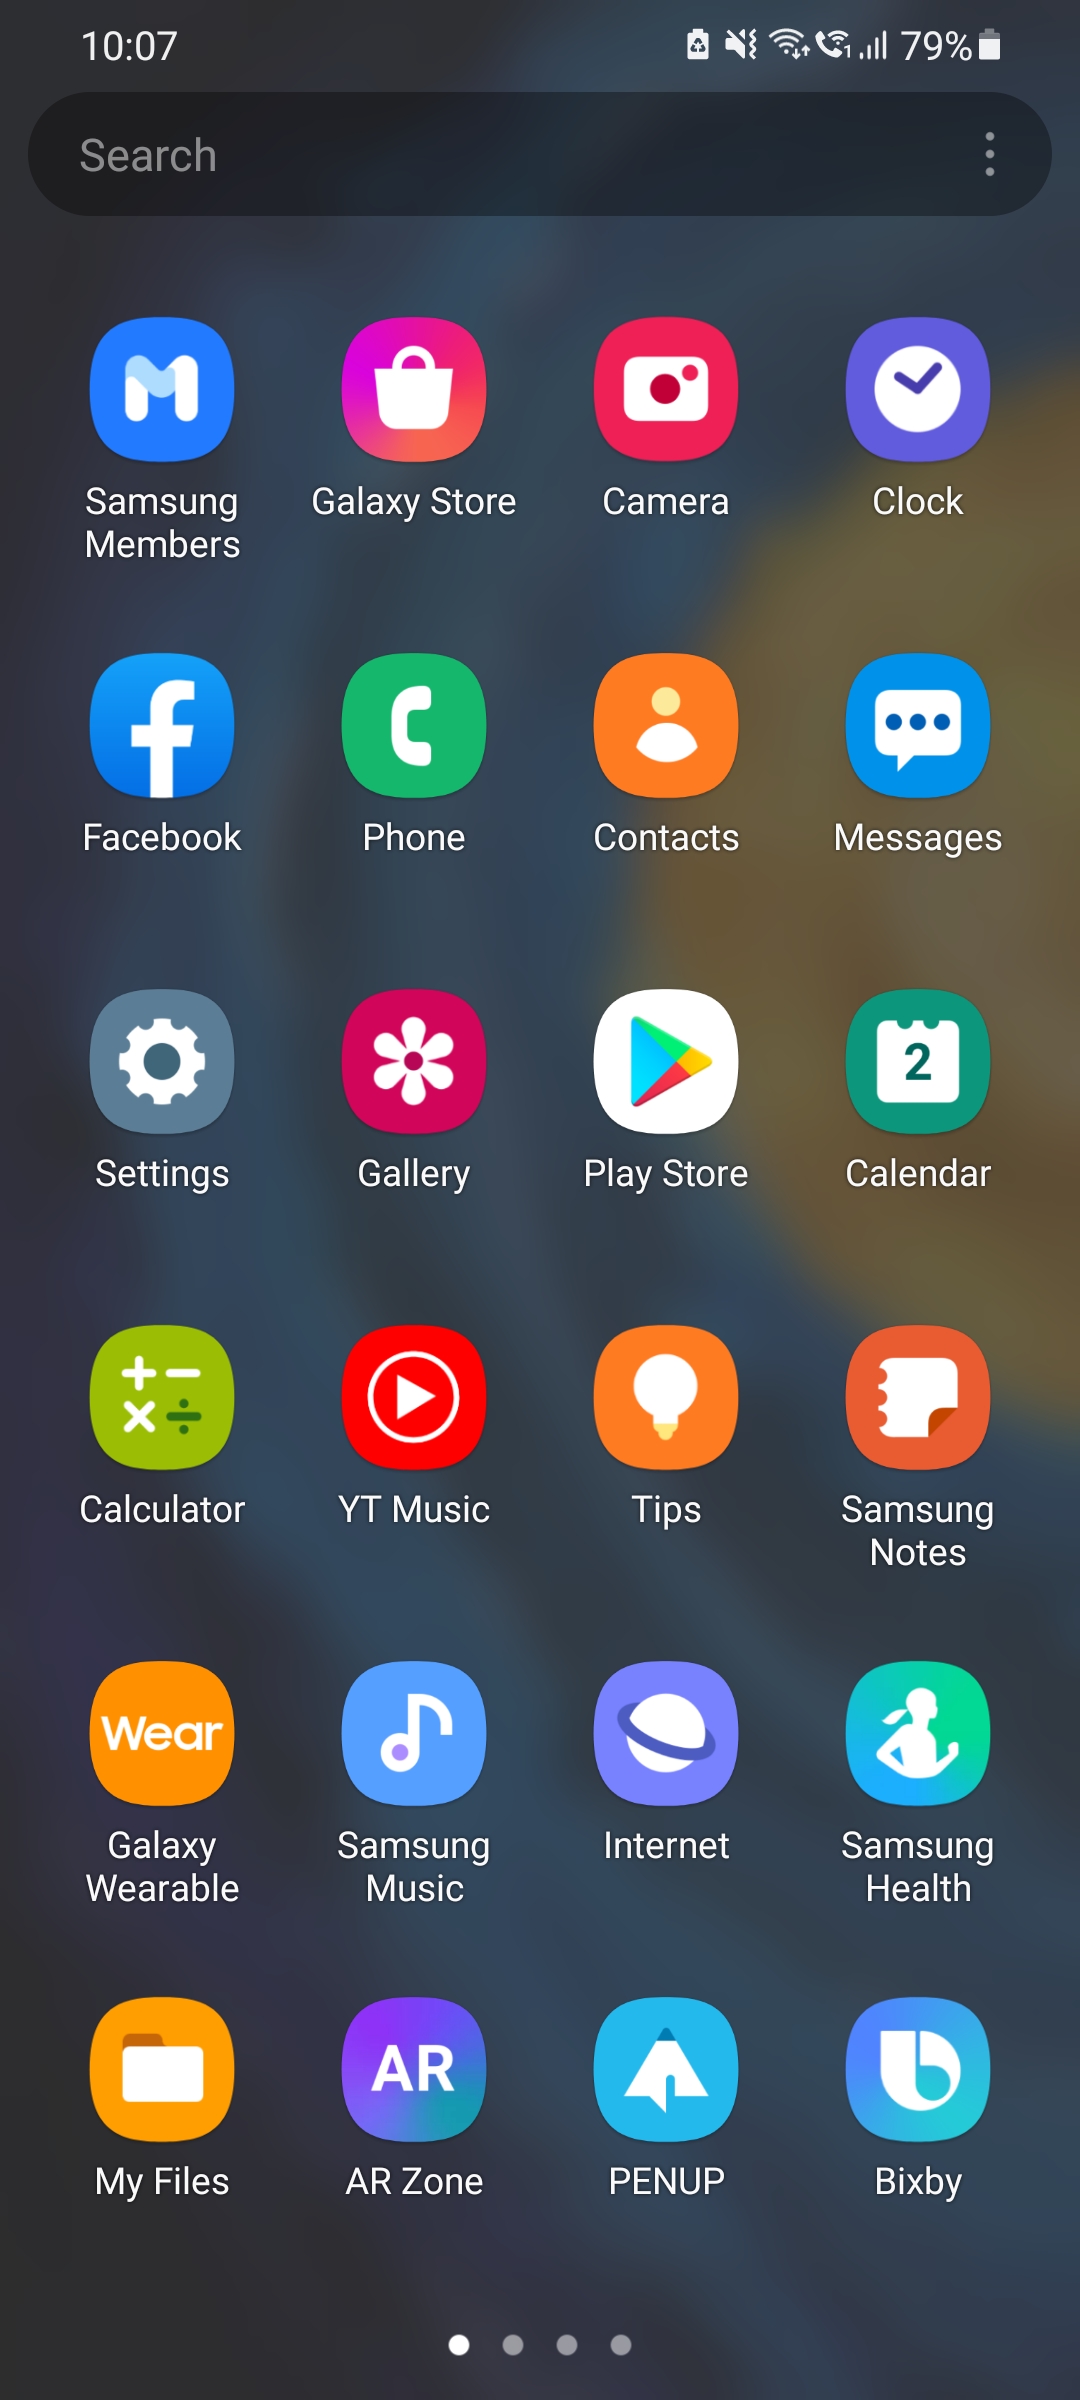 Tấm nền của app drawer trên điện thoại Samsung có thể được tùy chỉnh sao cho hài hòa, tạo sự đồng nhất với giao diện toàn bộ. Bên cạnh đó, nền tối giúp bảo vệ mắt và tiết kiệm pin. Hãy tham khảo video hướng dẫn của chúng tôi để biết cách tùy chỉnh tấm nền hoàn hảo cho app drawer trên điện thoại Samsung của bạn.